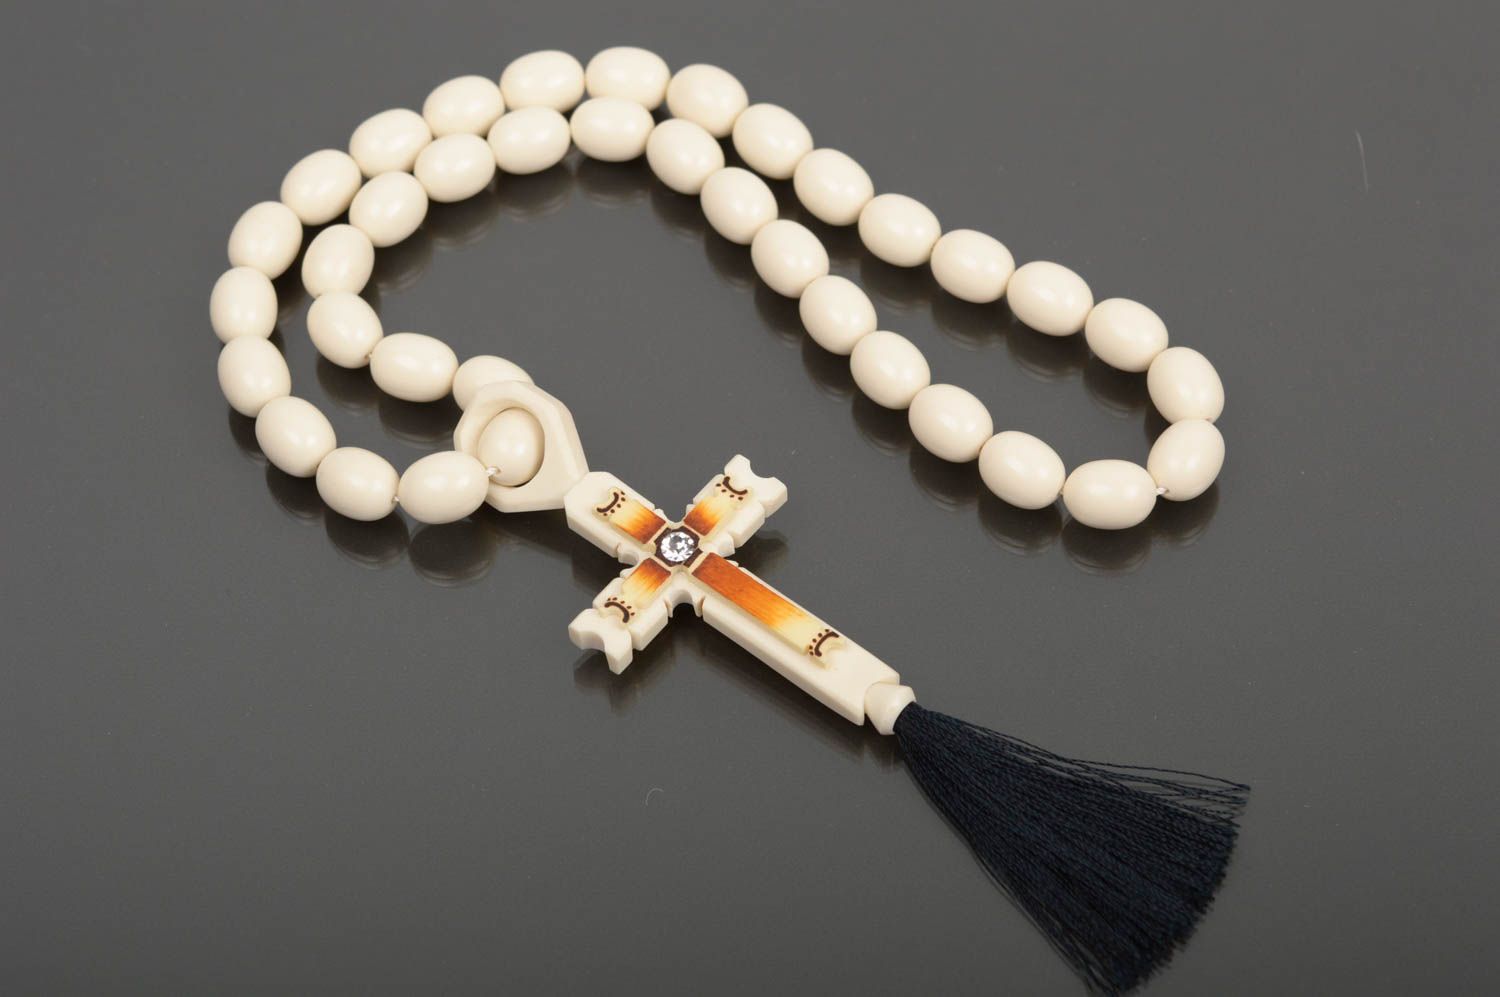 Handmade religious jewelry rosary beads prayer rope spiritual gifts mens gifts photo 1